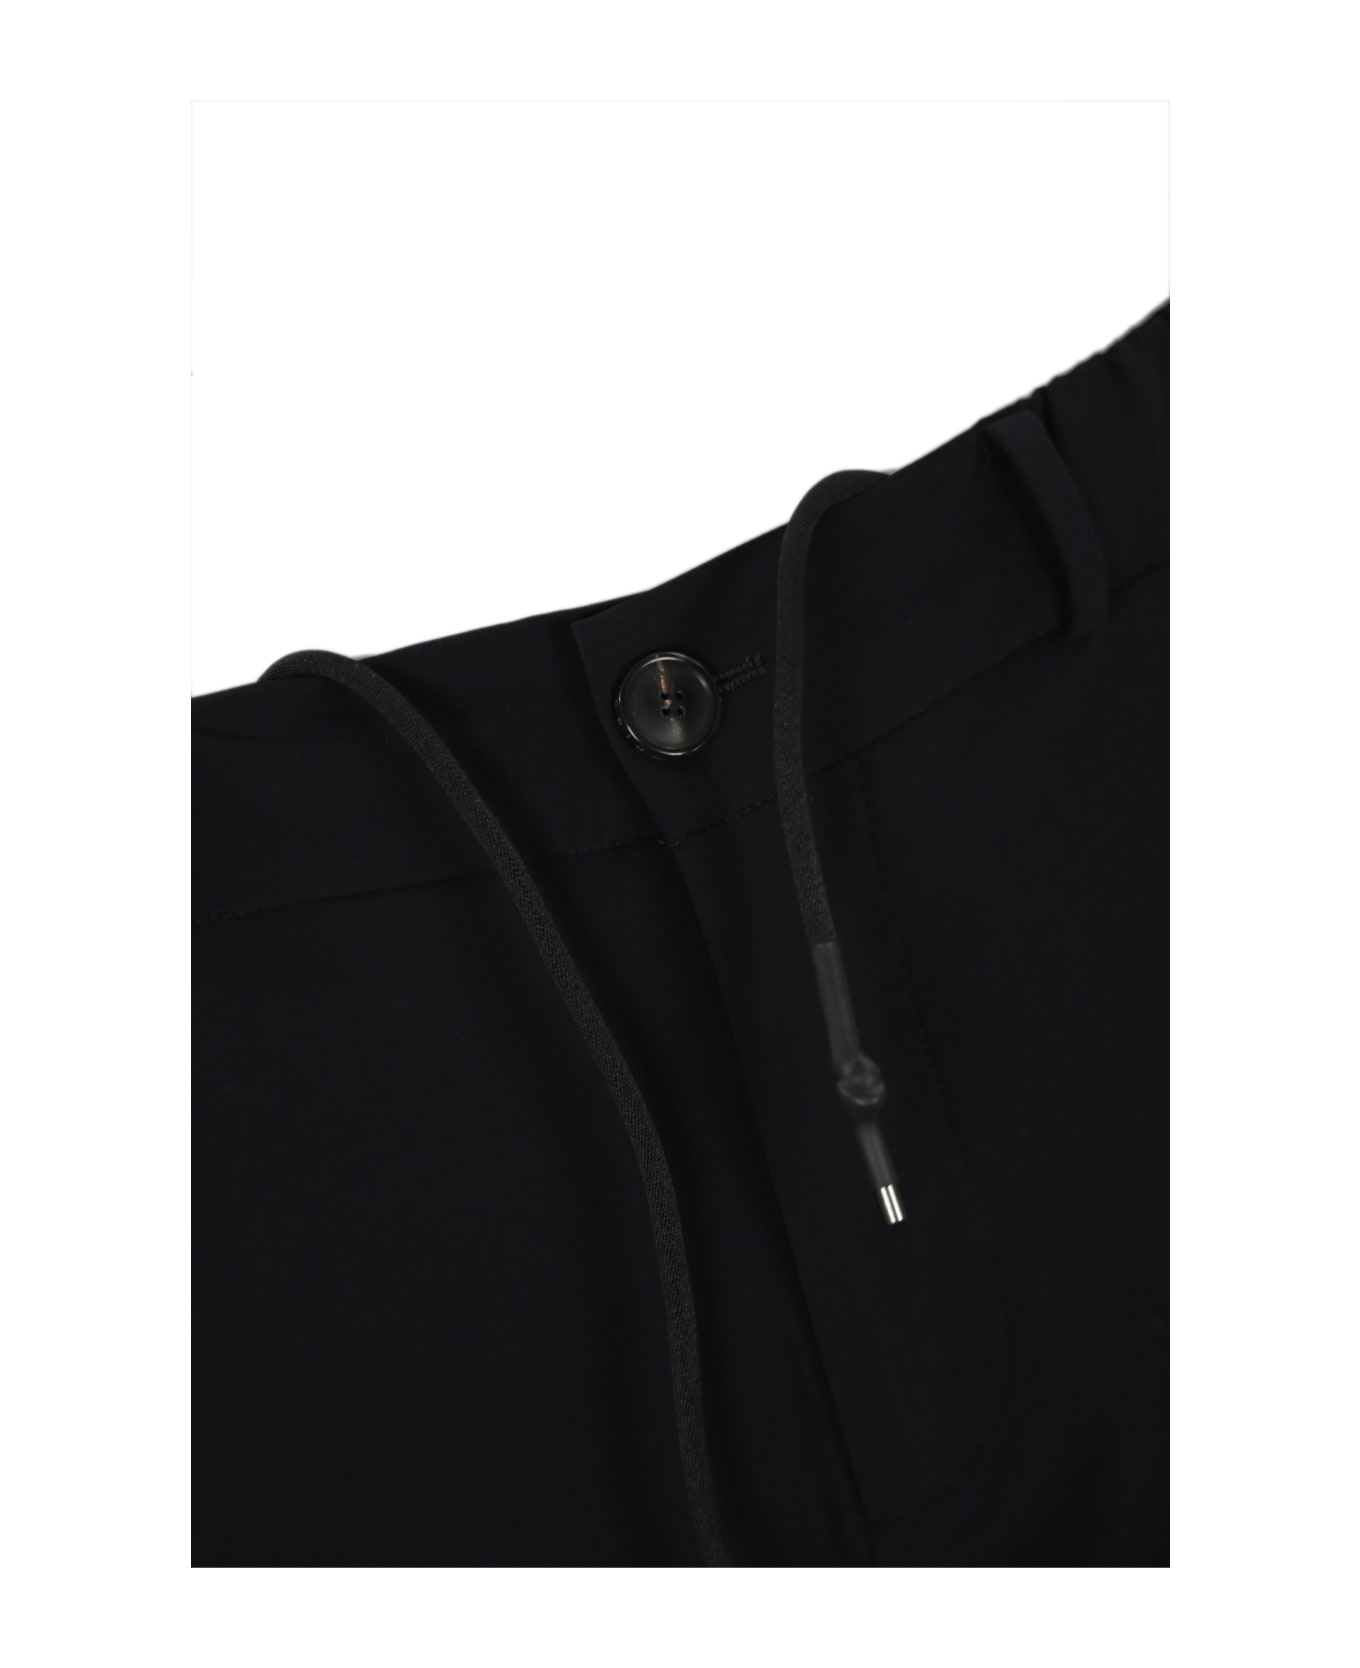 RRD - Roberto Ricci Design Chino Jo Trousers In Technical Fabric With Drawstring Rrd - Roberto Ricci Design - Nero